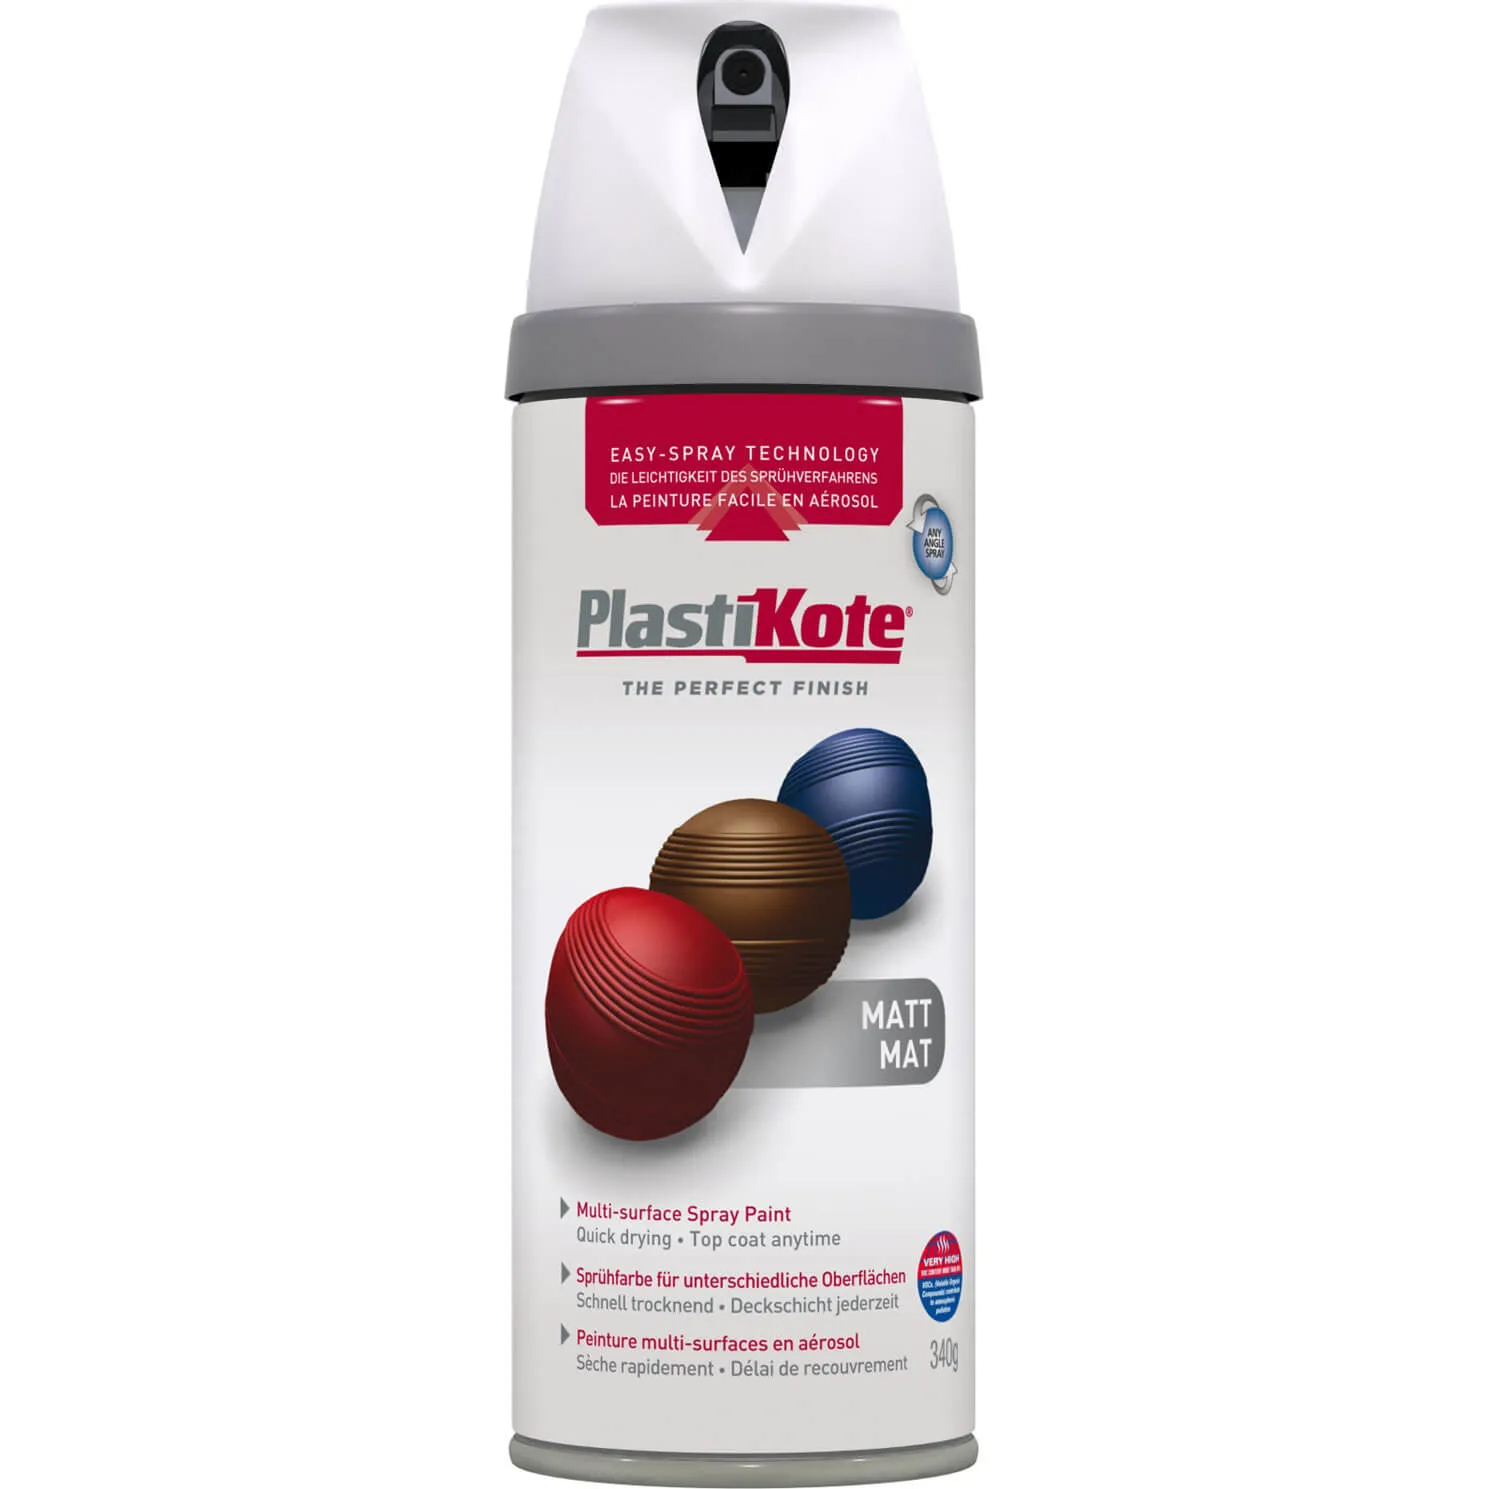 Plastikote Premium Matt Aerosol Spray Paint - White, 400ml